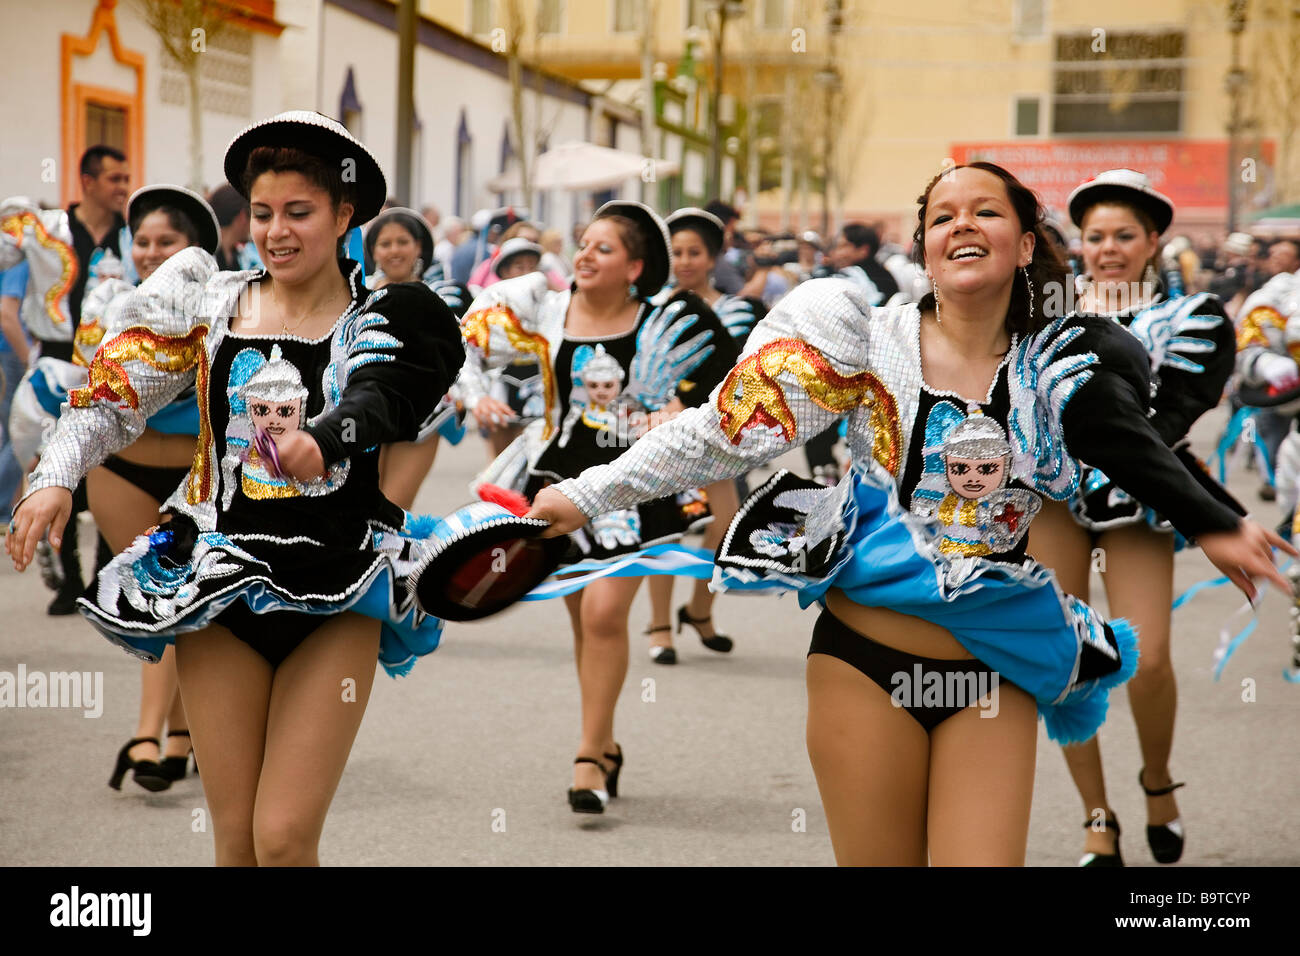 Bolivien-Gruppe tanzen internationale Messe für die Menschen in Fuengirola Málaga Sonnenküste Andalusien Spanien Stockfoto